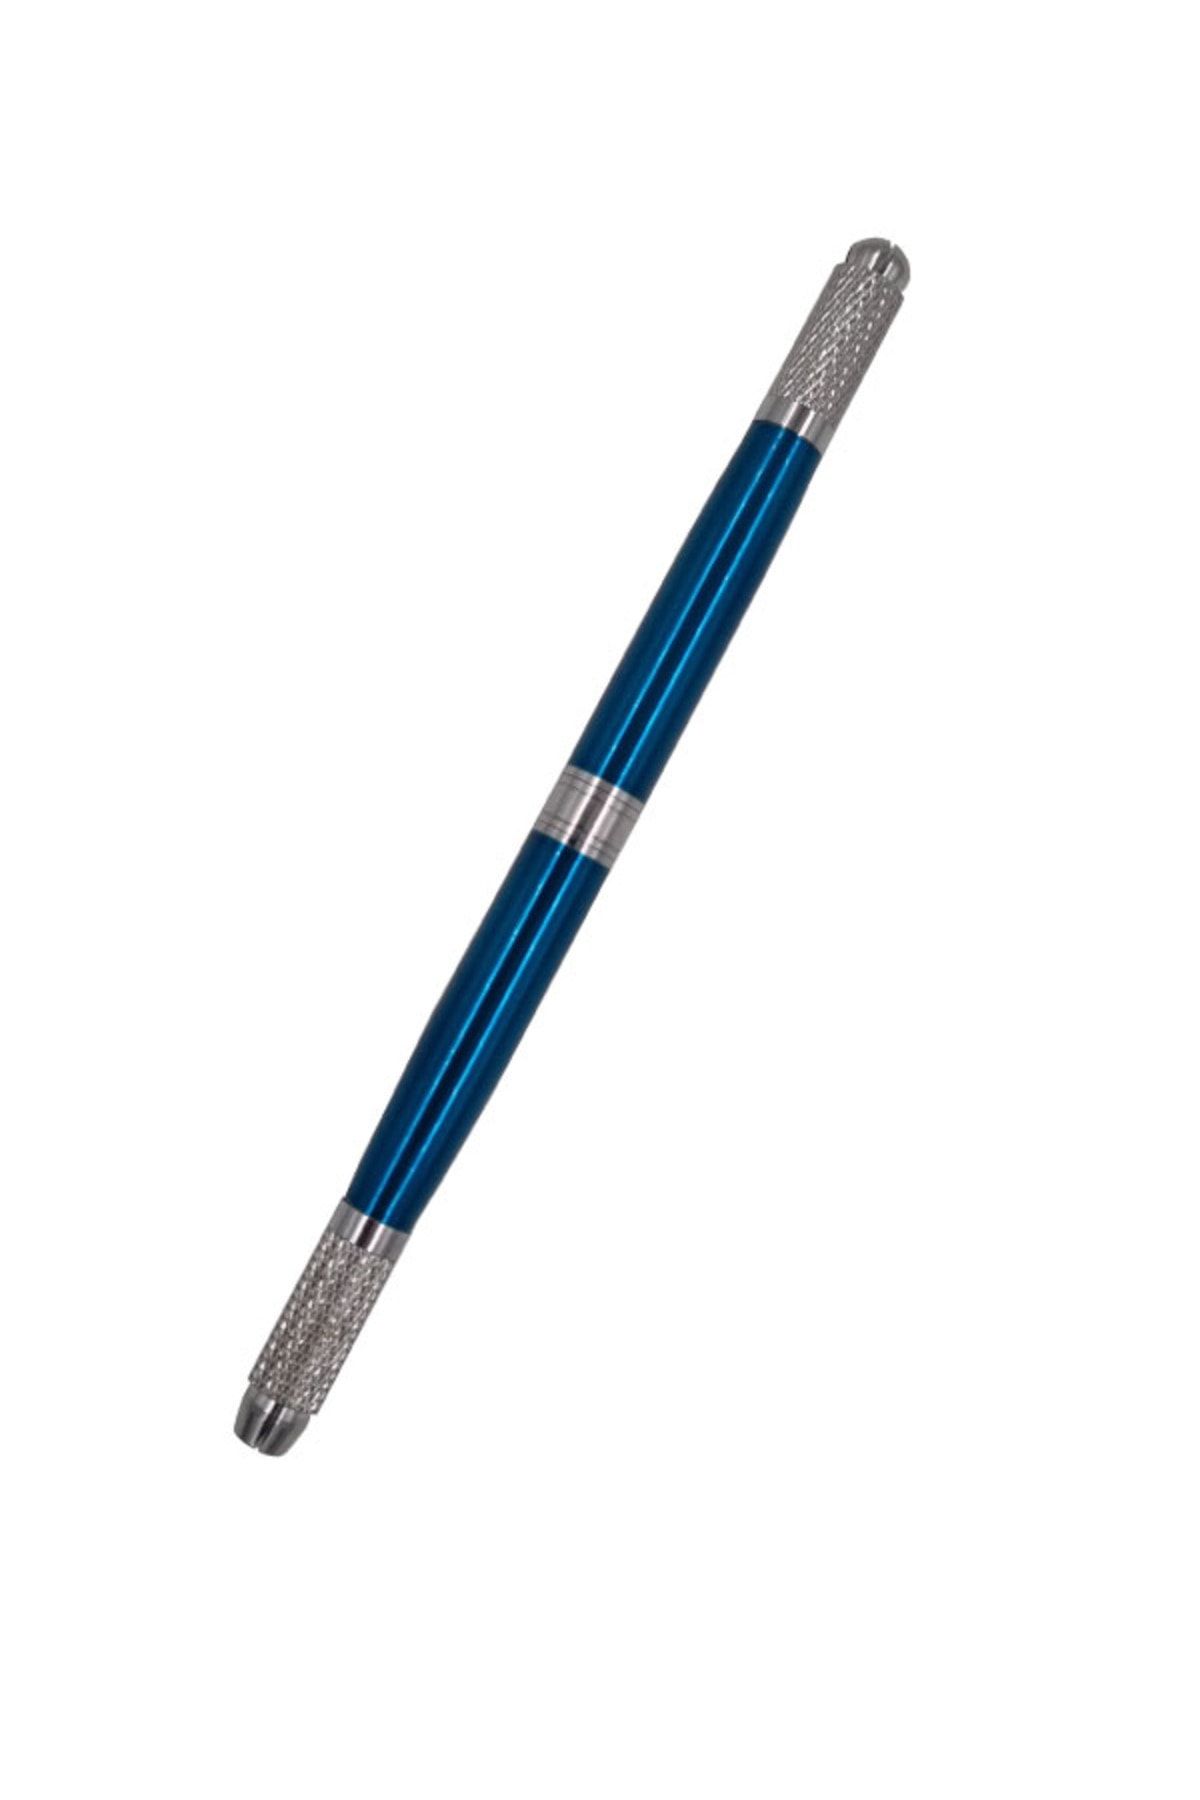 ARMONİKONYA Microblading Kalem Manuel 3başlıklı Kalıcı Kaş Kalem Fonksiyonel Kıl Tekniği Kalemi Mavi